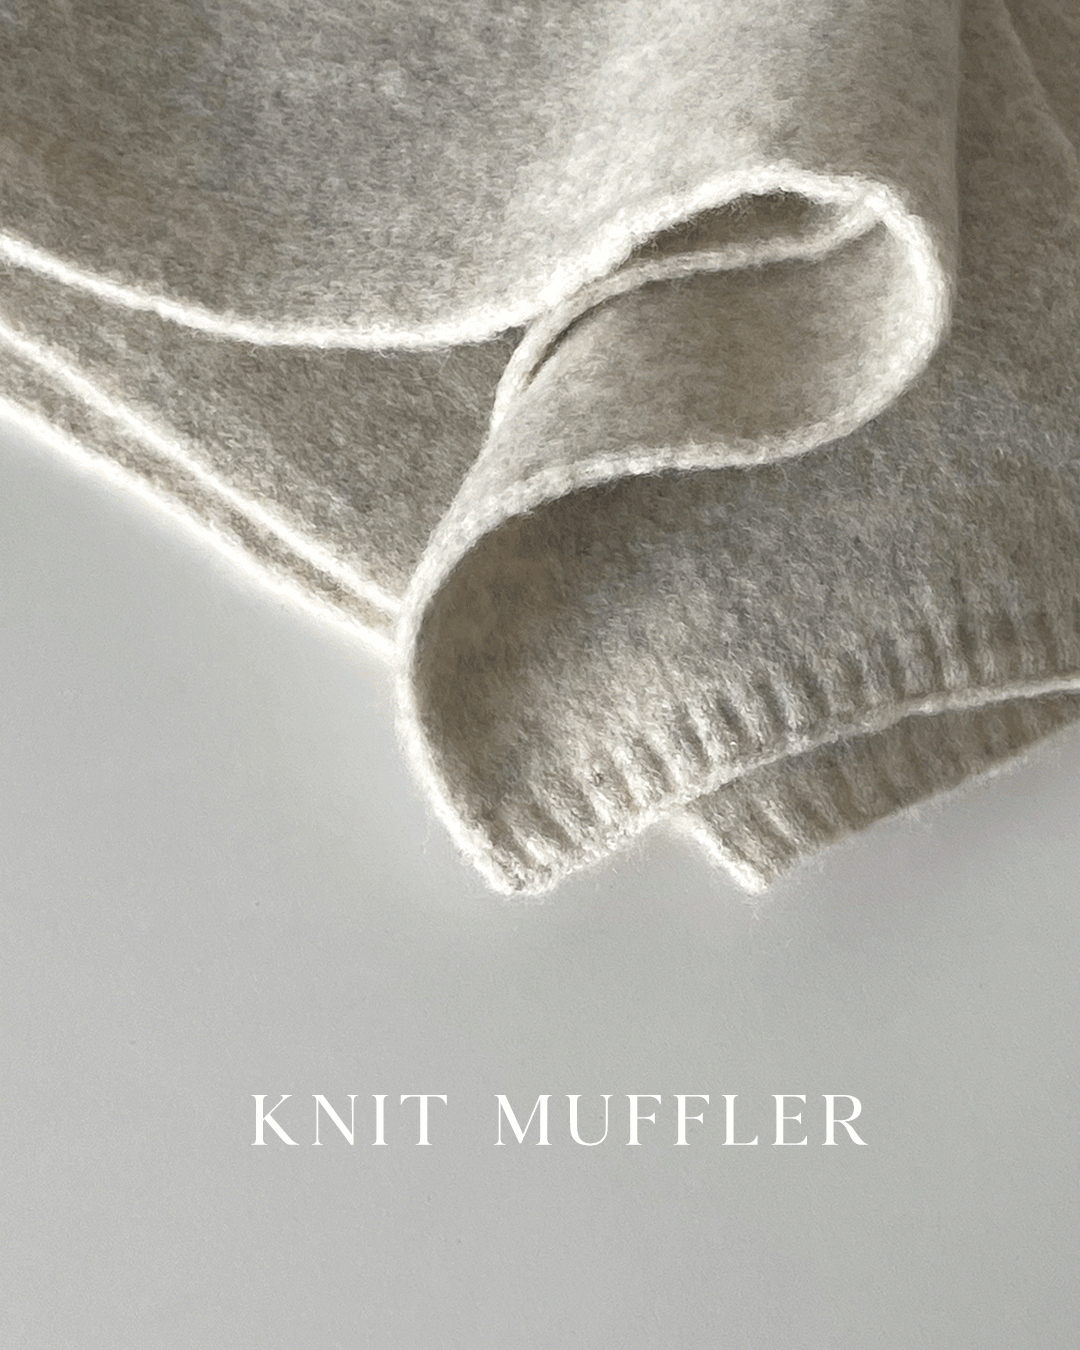 Knit muffler